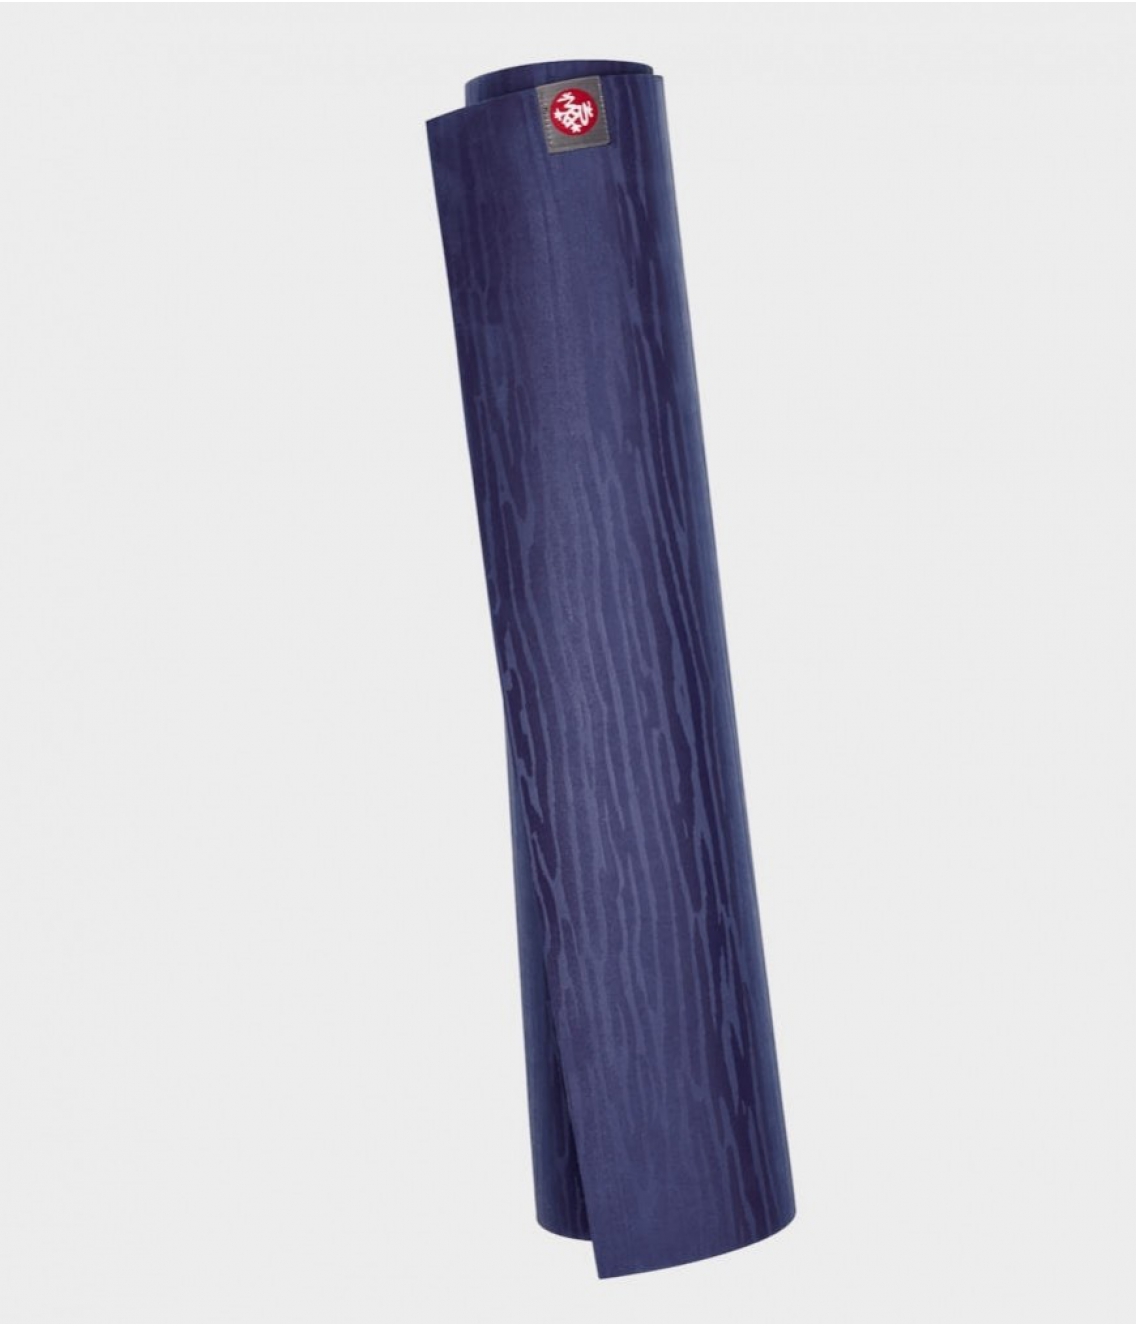 Профессиональный каучуковый коврик для йоги Manduka eKO lite 180*61*0,4 см - New Moon (Limited Edition)